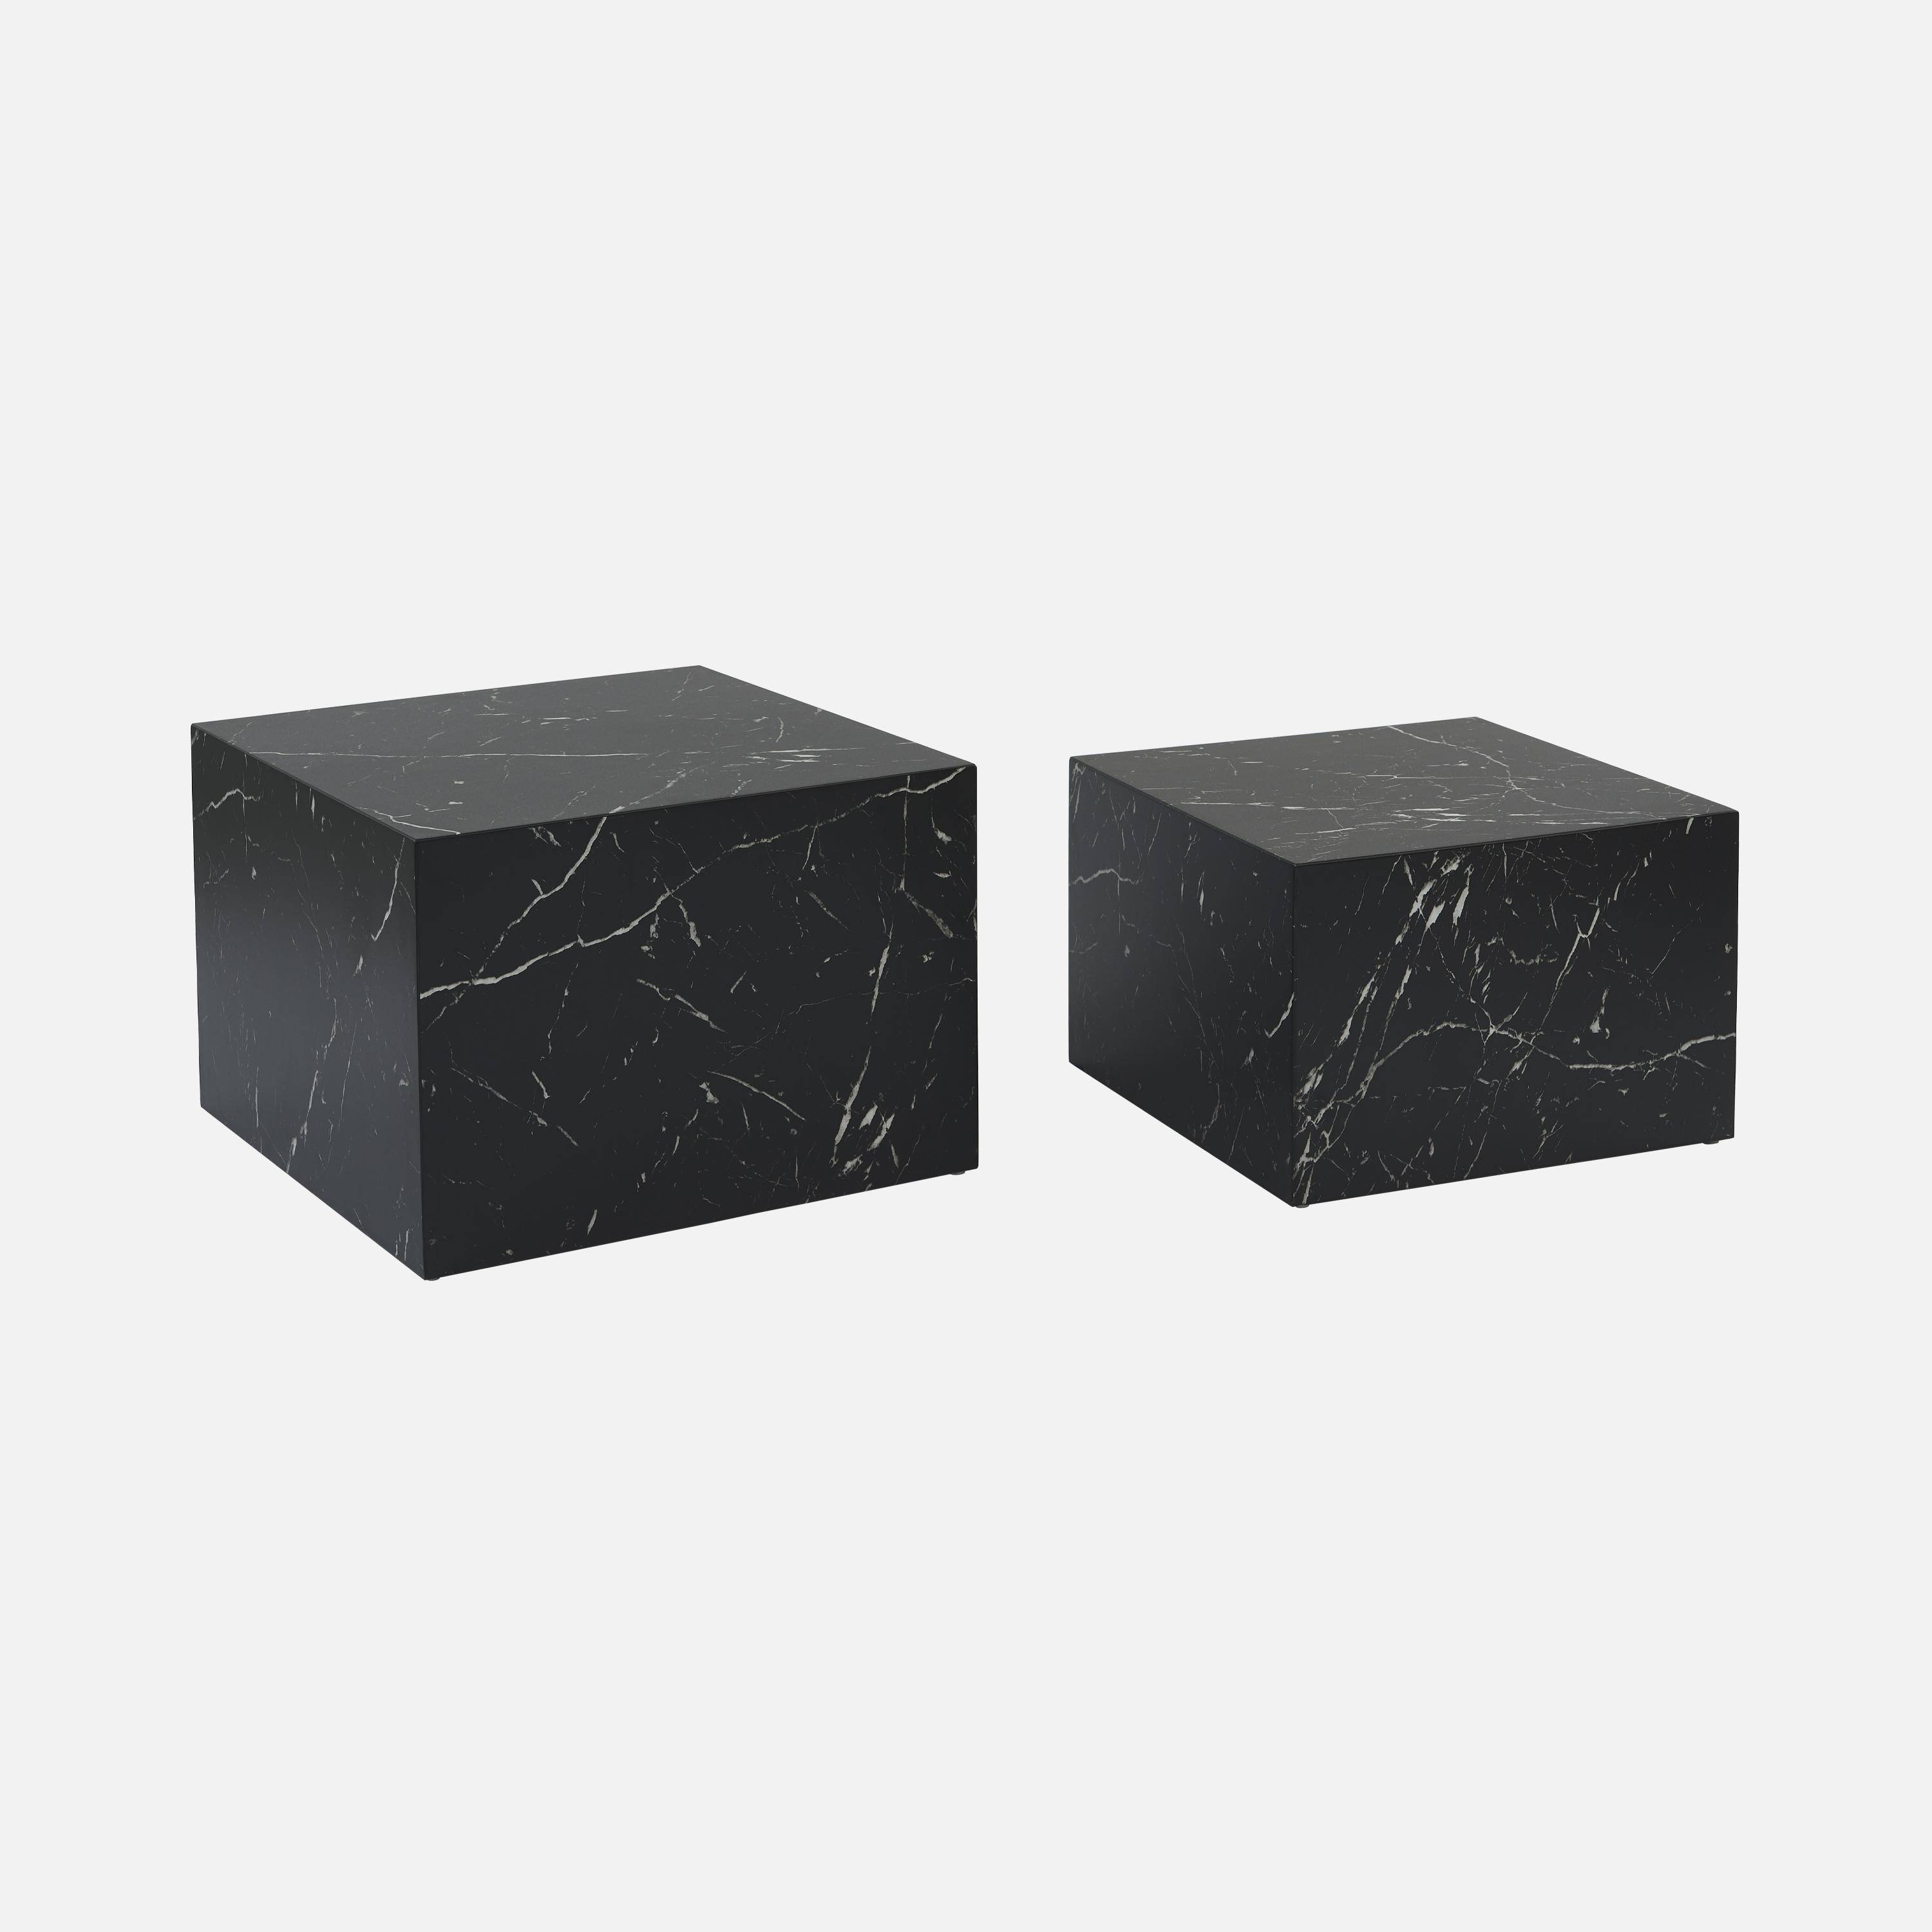 Conjunto de 2 mesas de centro com efeito de mármore preto, C 58 x L 58 x A 40cm / C 50 x L 50 x A 33cm,sweeek,Photo5